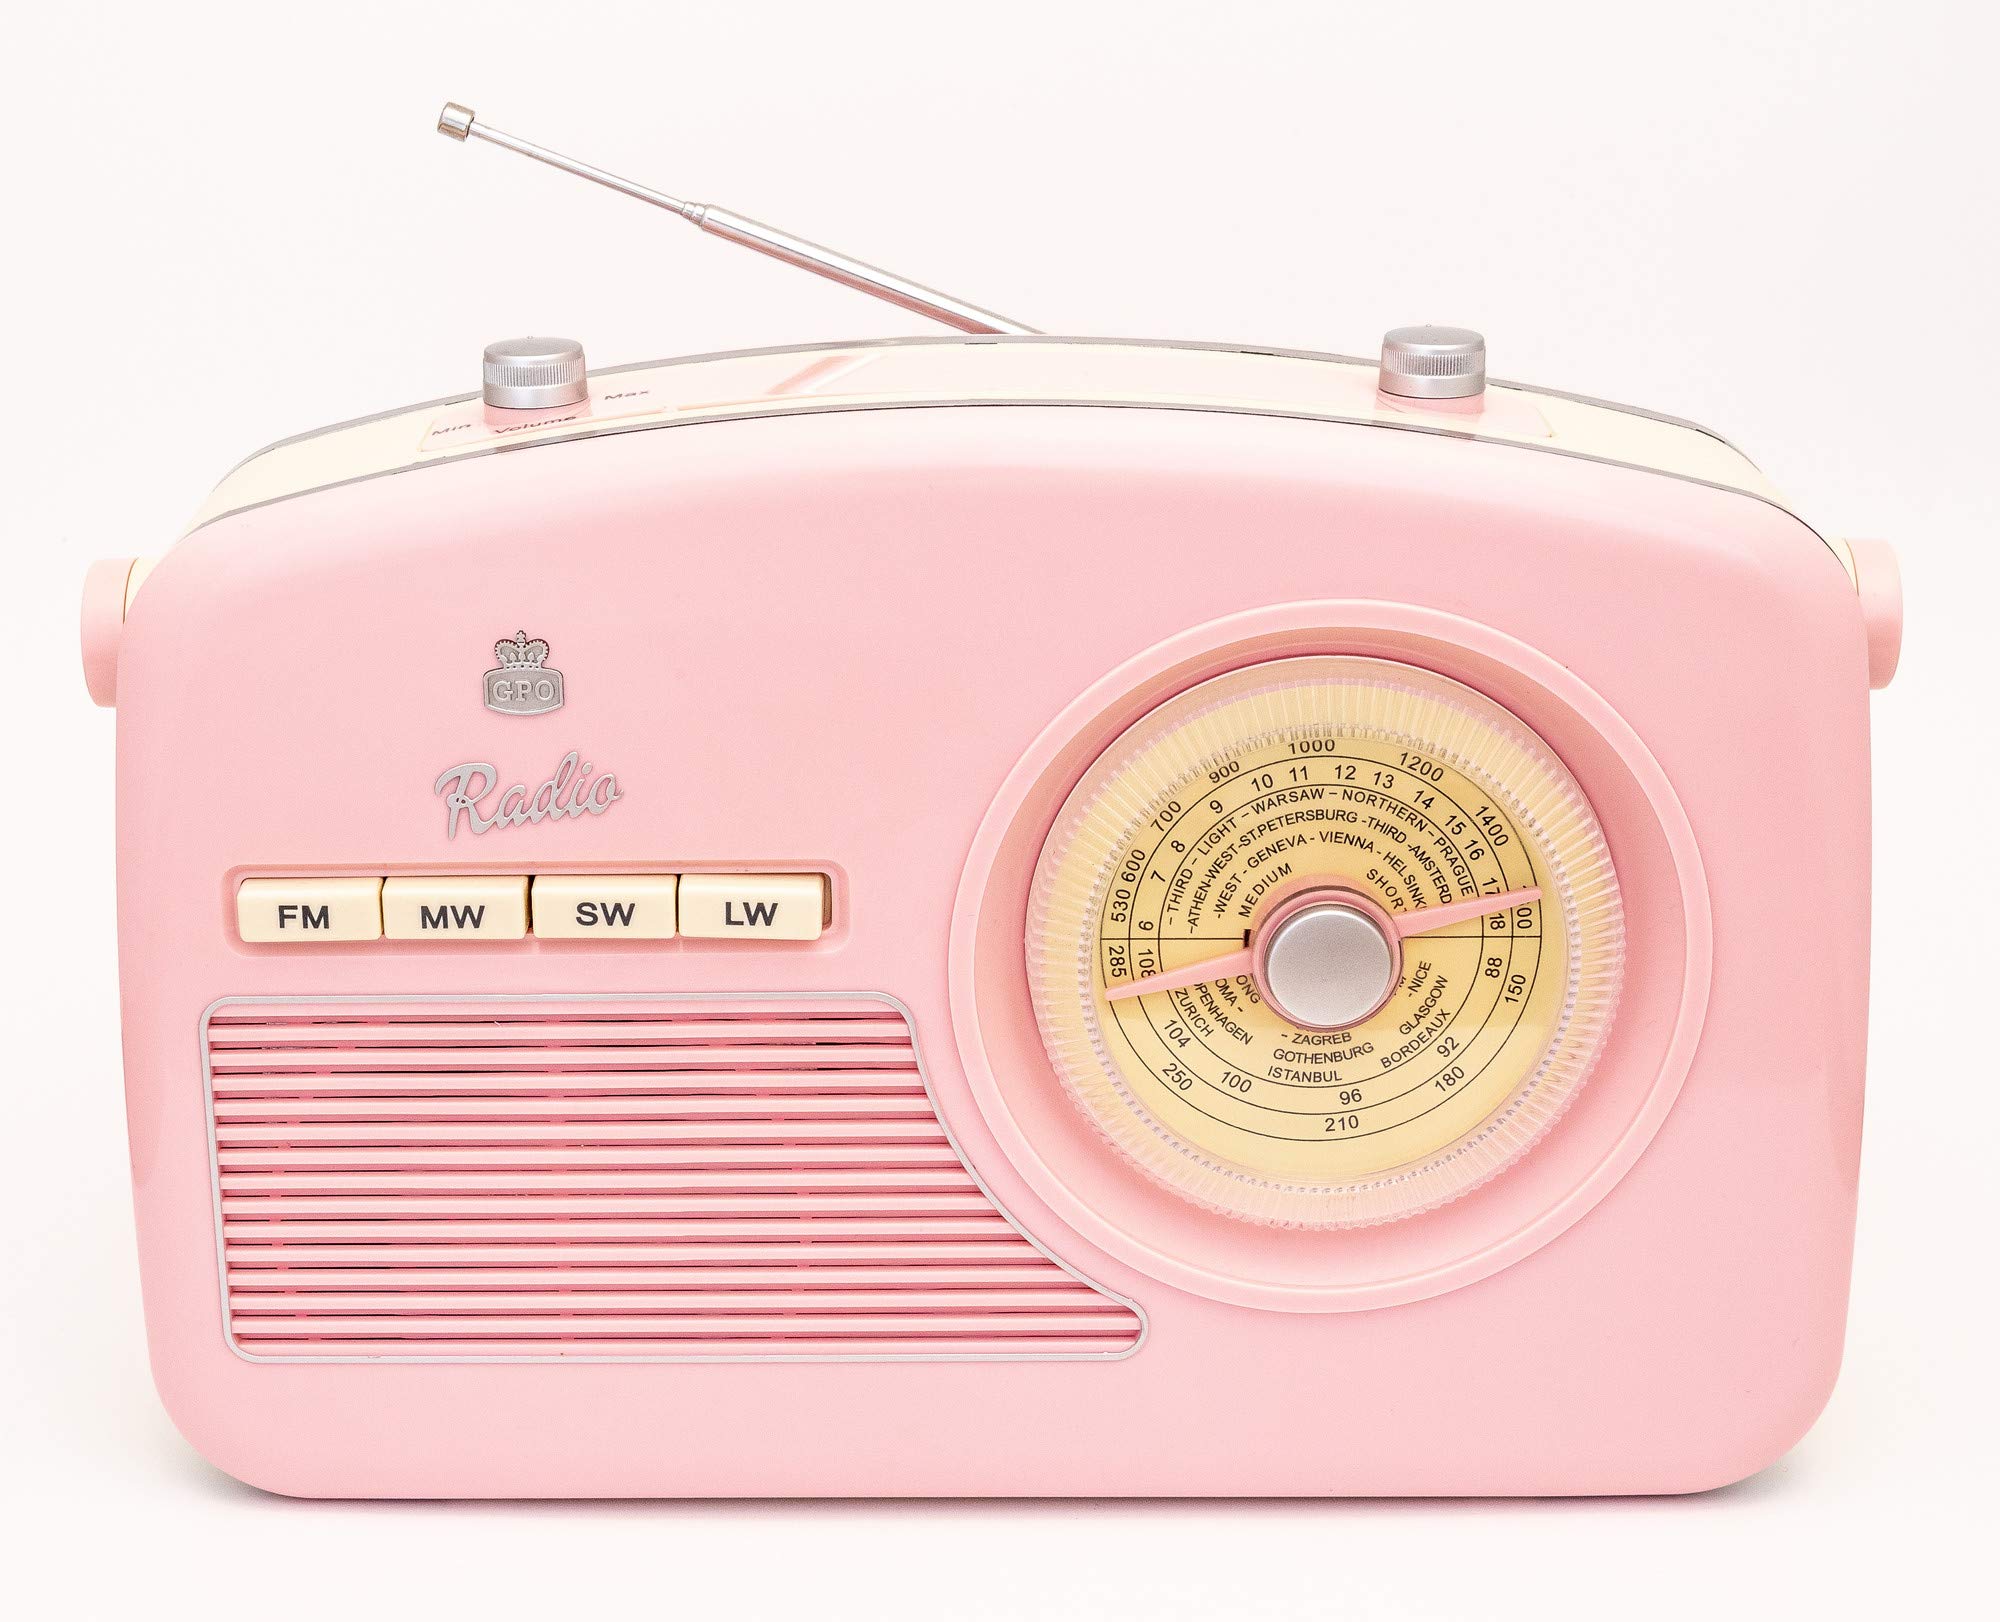 Audio & Hi-Fi Gpo: Retro Portable 4-Band Fm/Mw/Sw/Lw Radio Radio With Retro Dial Face Pink NUOVO SIGILLATO SUBITO DISPONIBILE